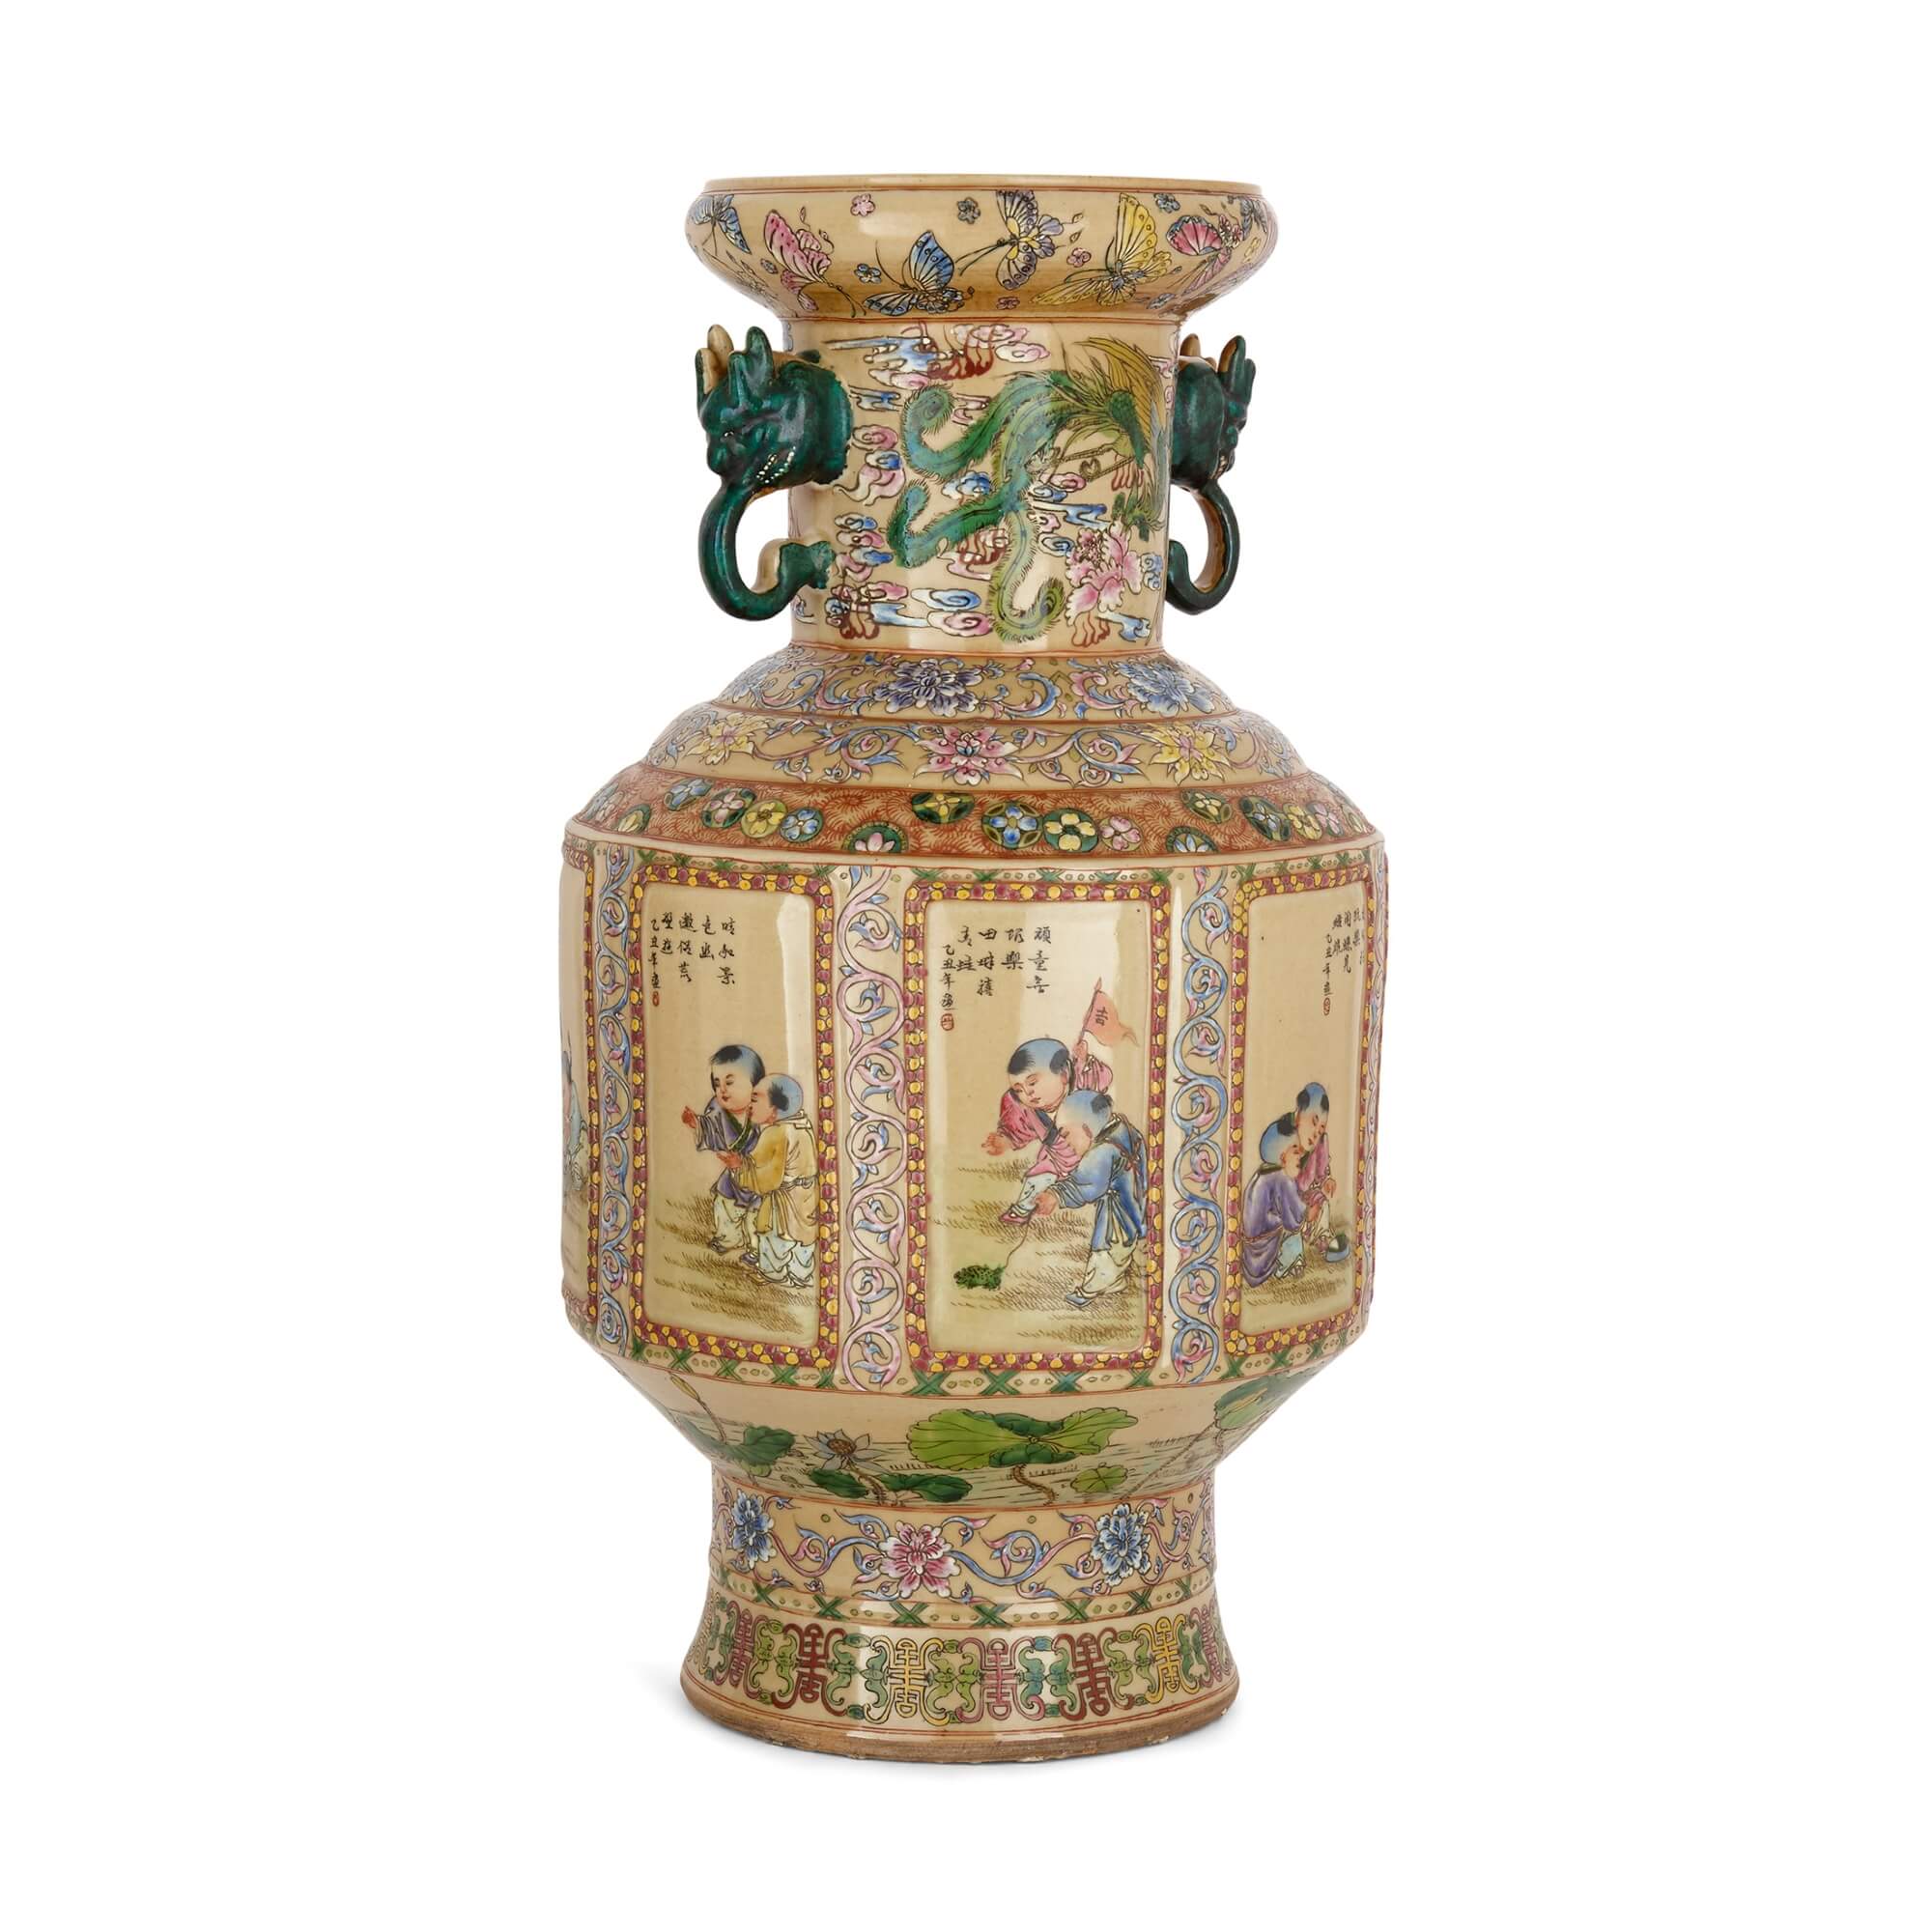 Antique Creamer Vase at Gothic Rose Antiques